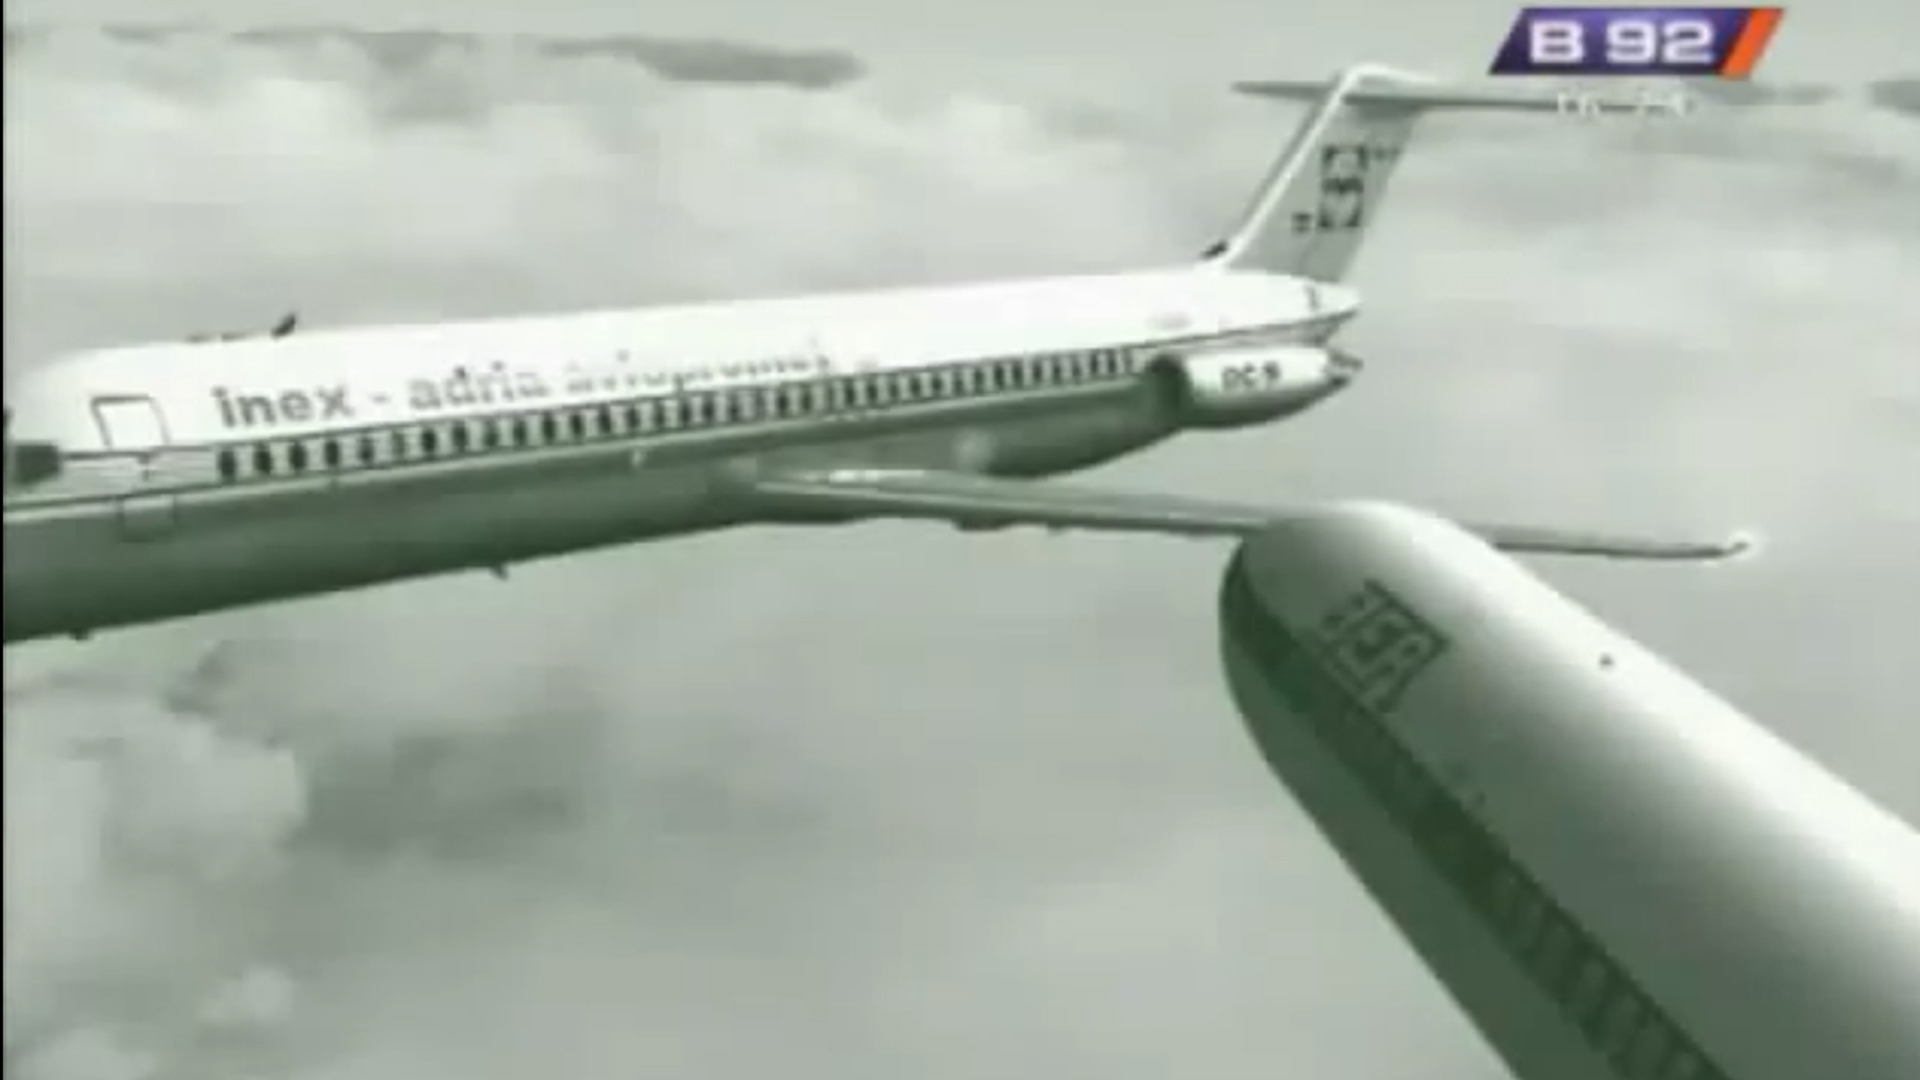 U sudaru su sudjelovali Douglas DC-9 Inex-Adria Avioprometa i Trident Hawker British Airwaysa. Taj DC-9 je ujedno bio i prvi mlažnjak kompanije, kojeg su kupili 1969.